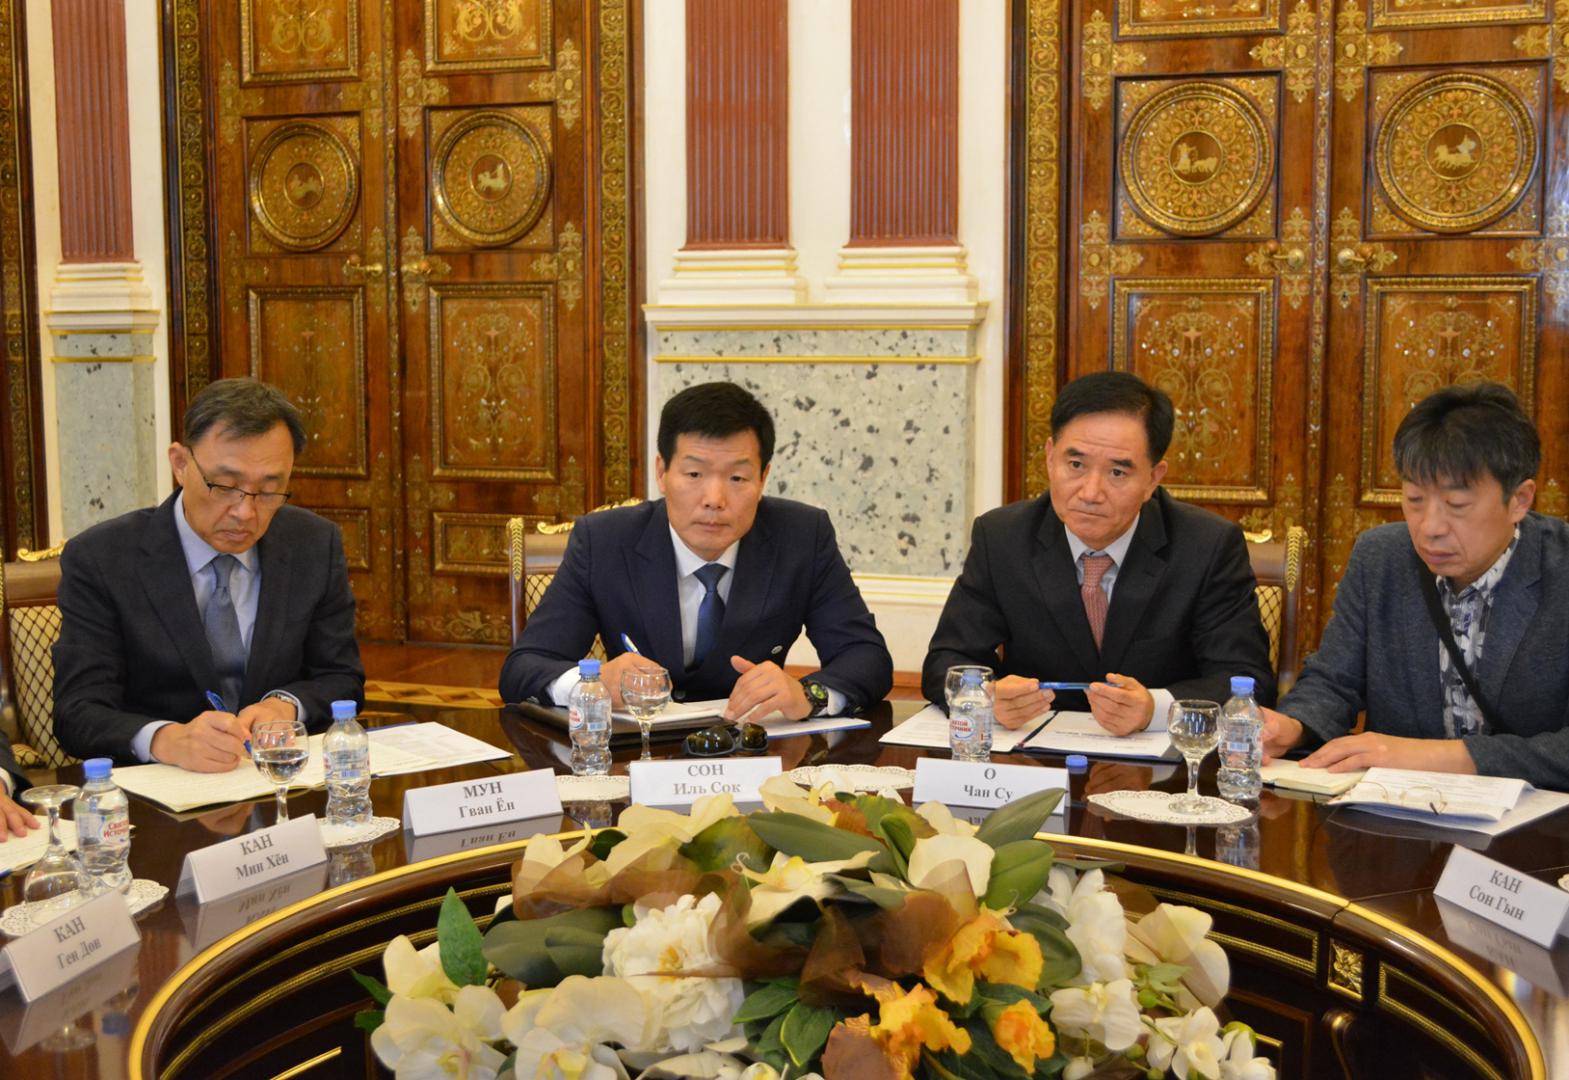 Контрольно-счетную палату Санкт-Петербурга посетила делегация корейских аудиторов провинции Чеджу